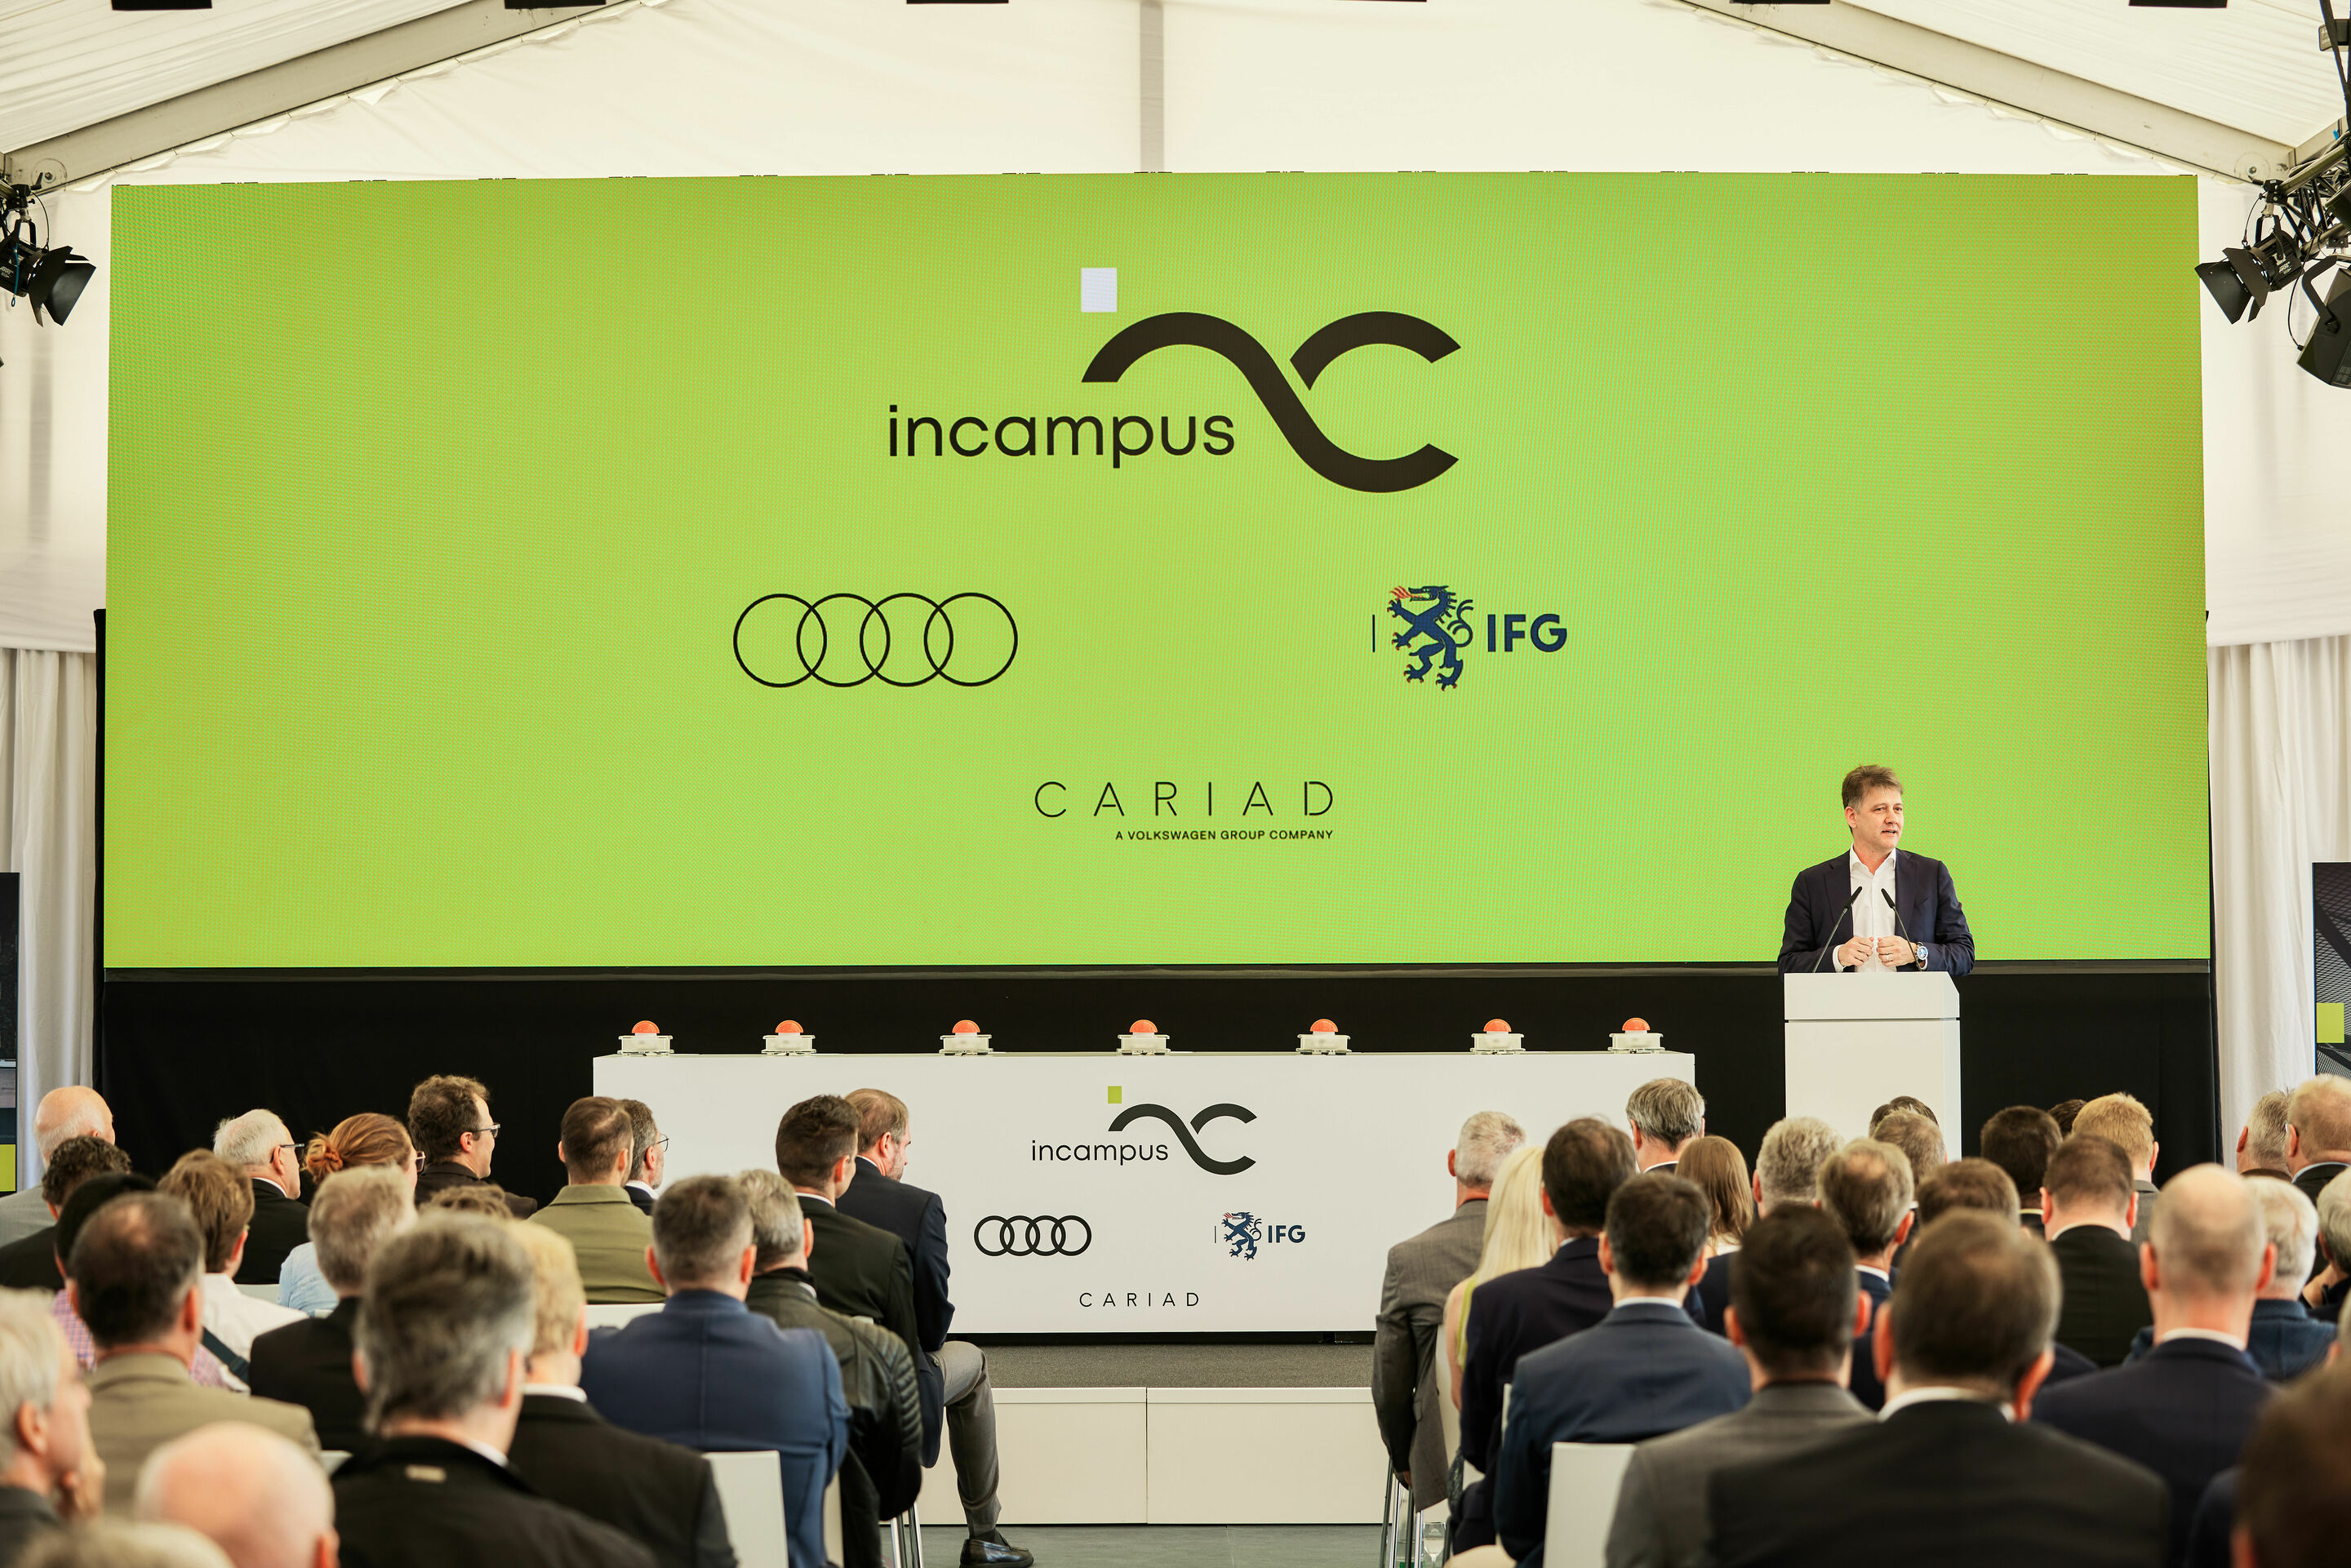 incampus in Ingolstadt eröffnet: neuer Boden für Ideen